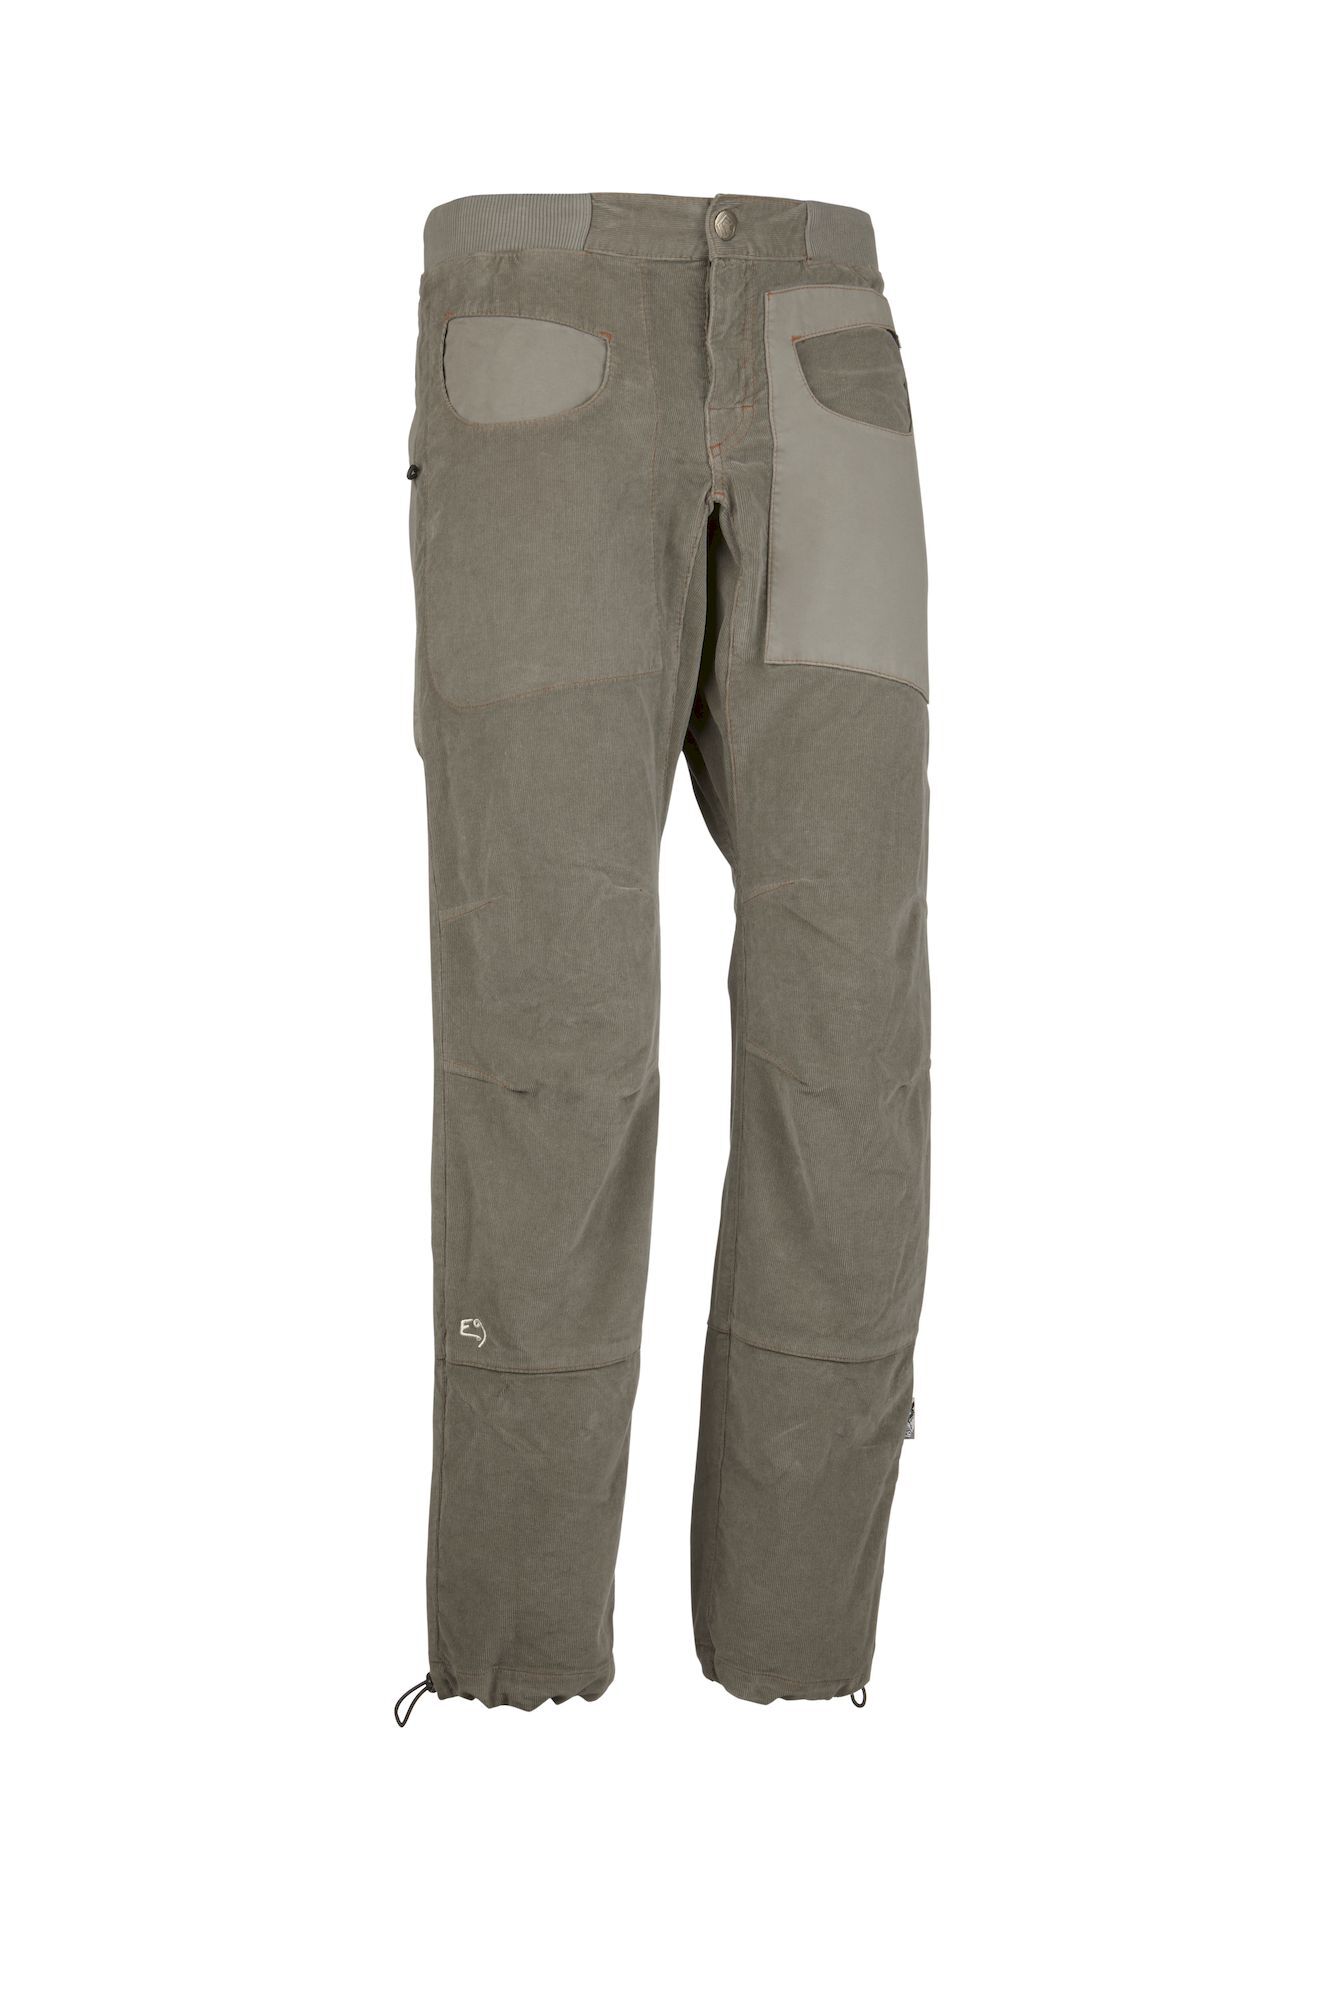 E9 N Blat1 VS - Pantalones de escalada - Hombre | Hardloop